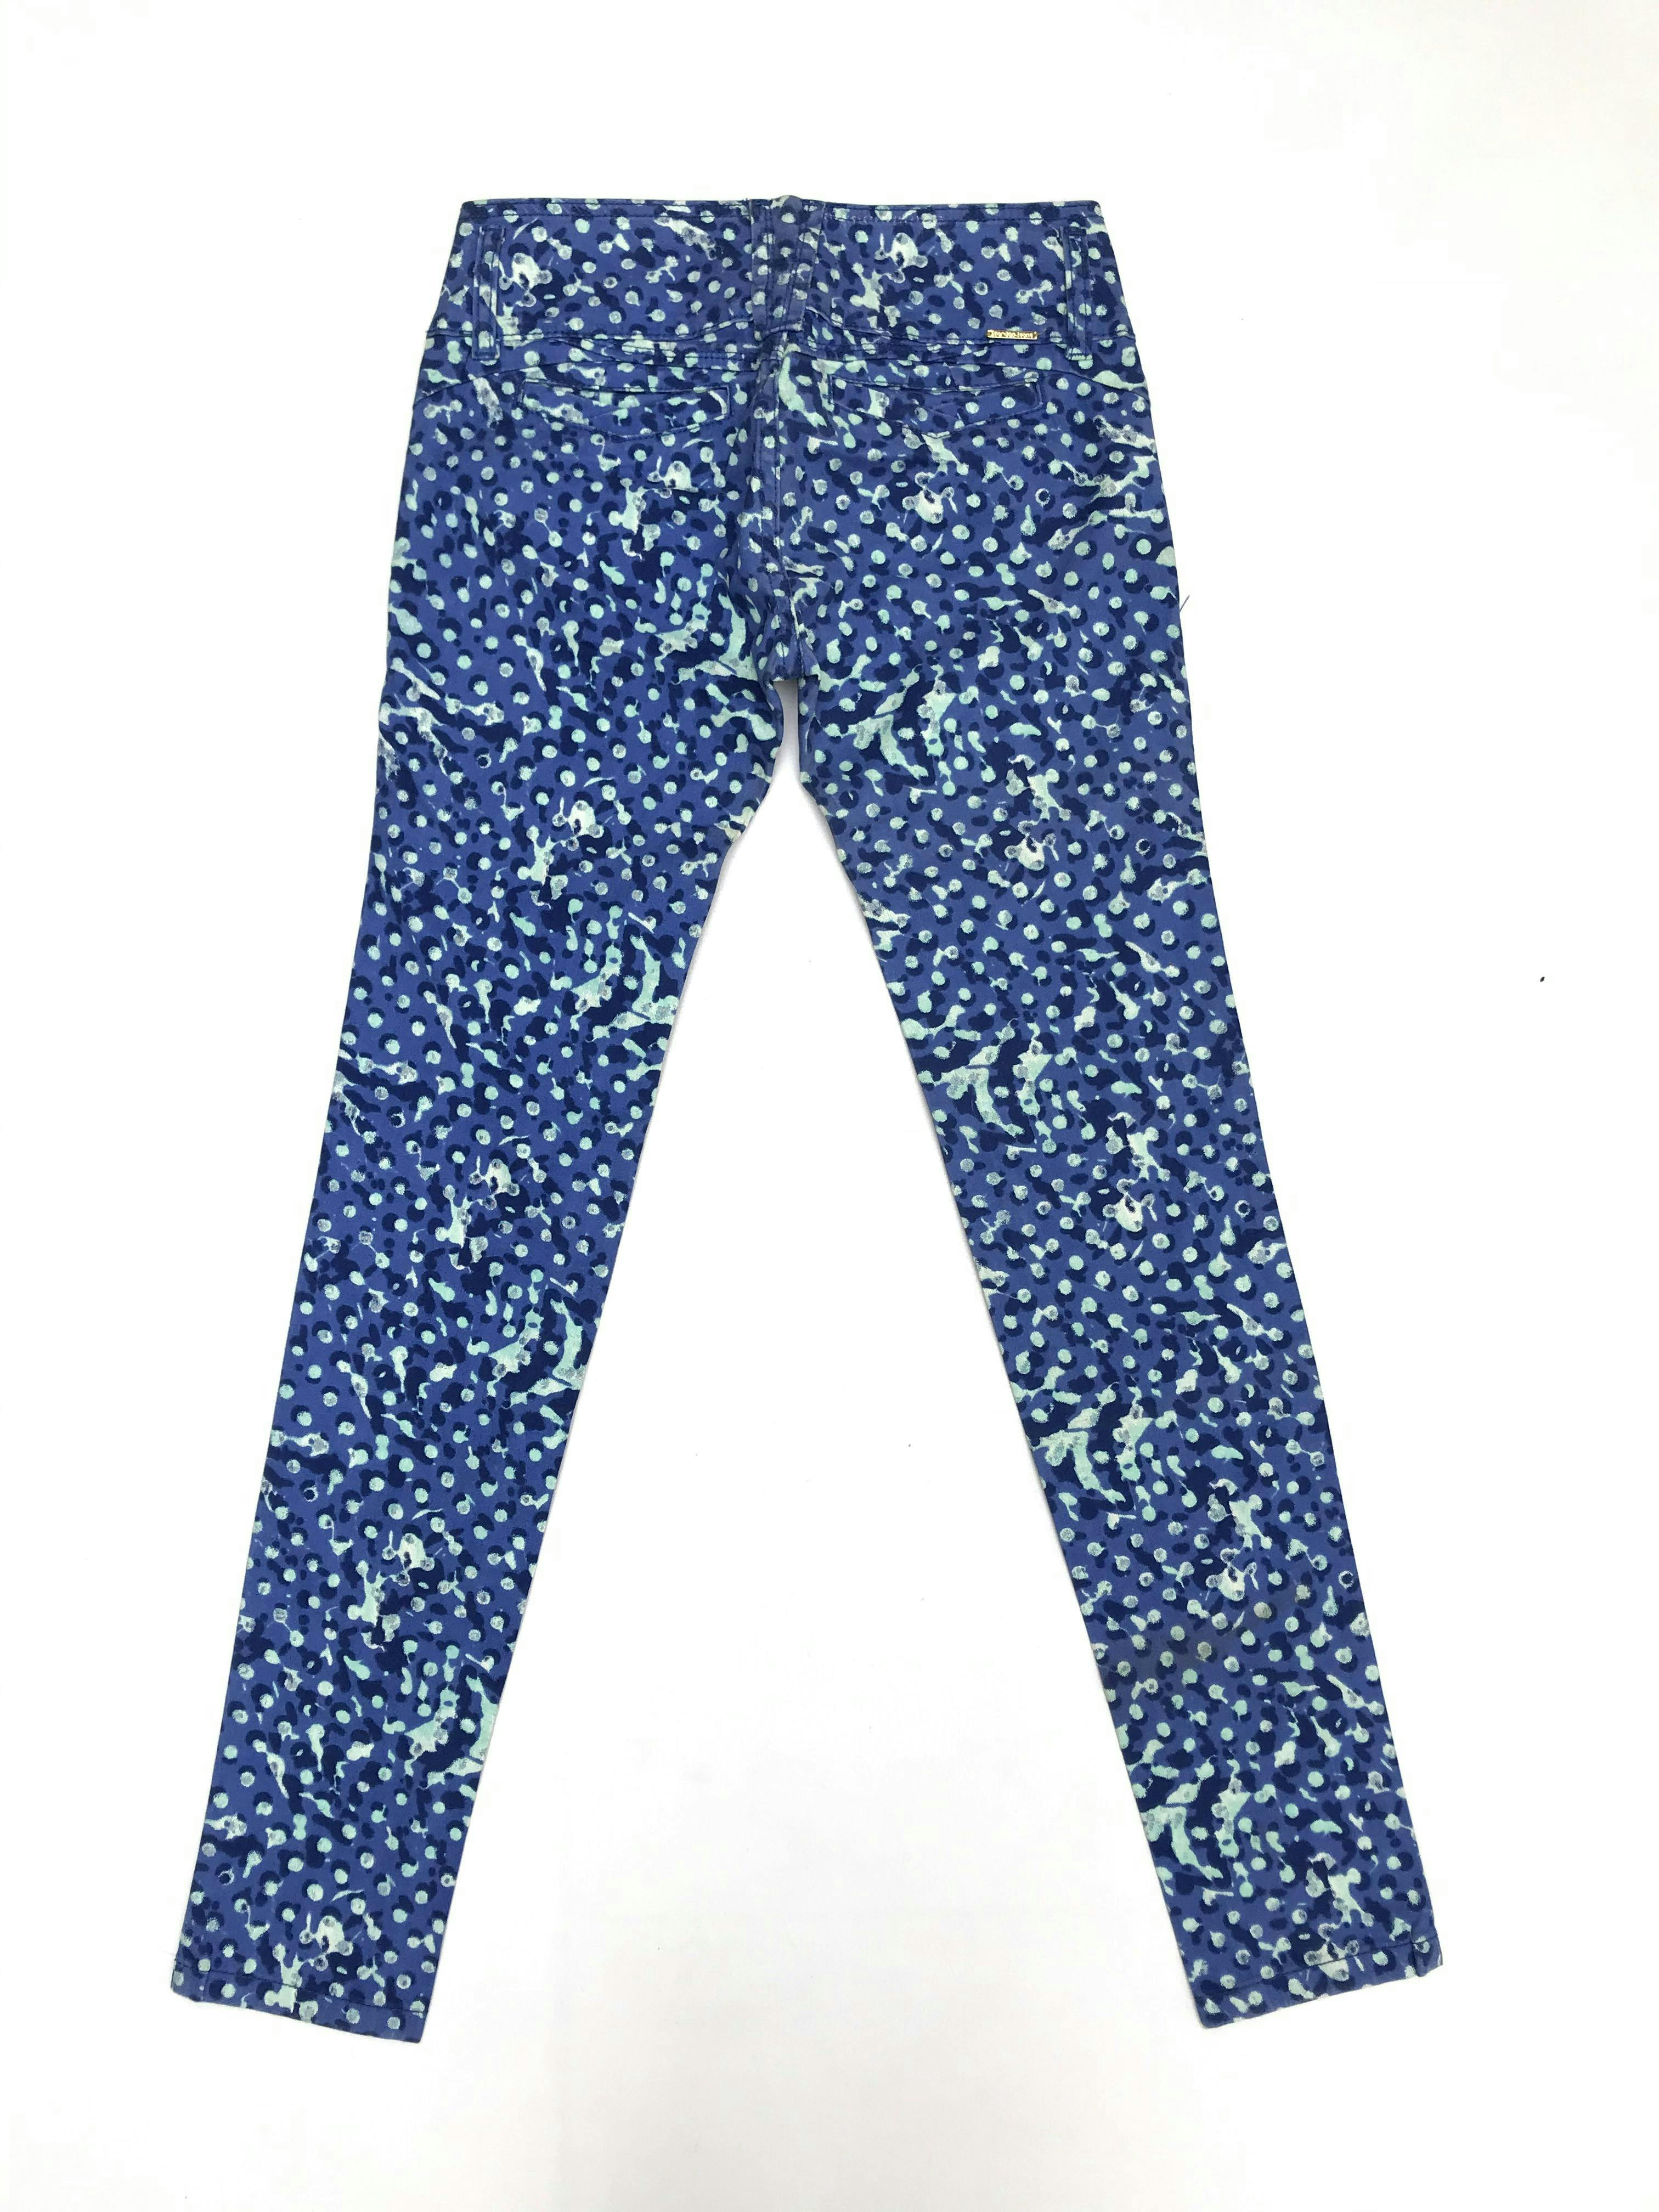 Pantalón jean con estampado en tonos azules y celestes, 98% algodón, tres botones dorados, bolsillos falsos delanteros y posteriores, tiro medio, corte pitillo. Cintura 66cm Largo 94cm